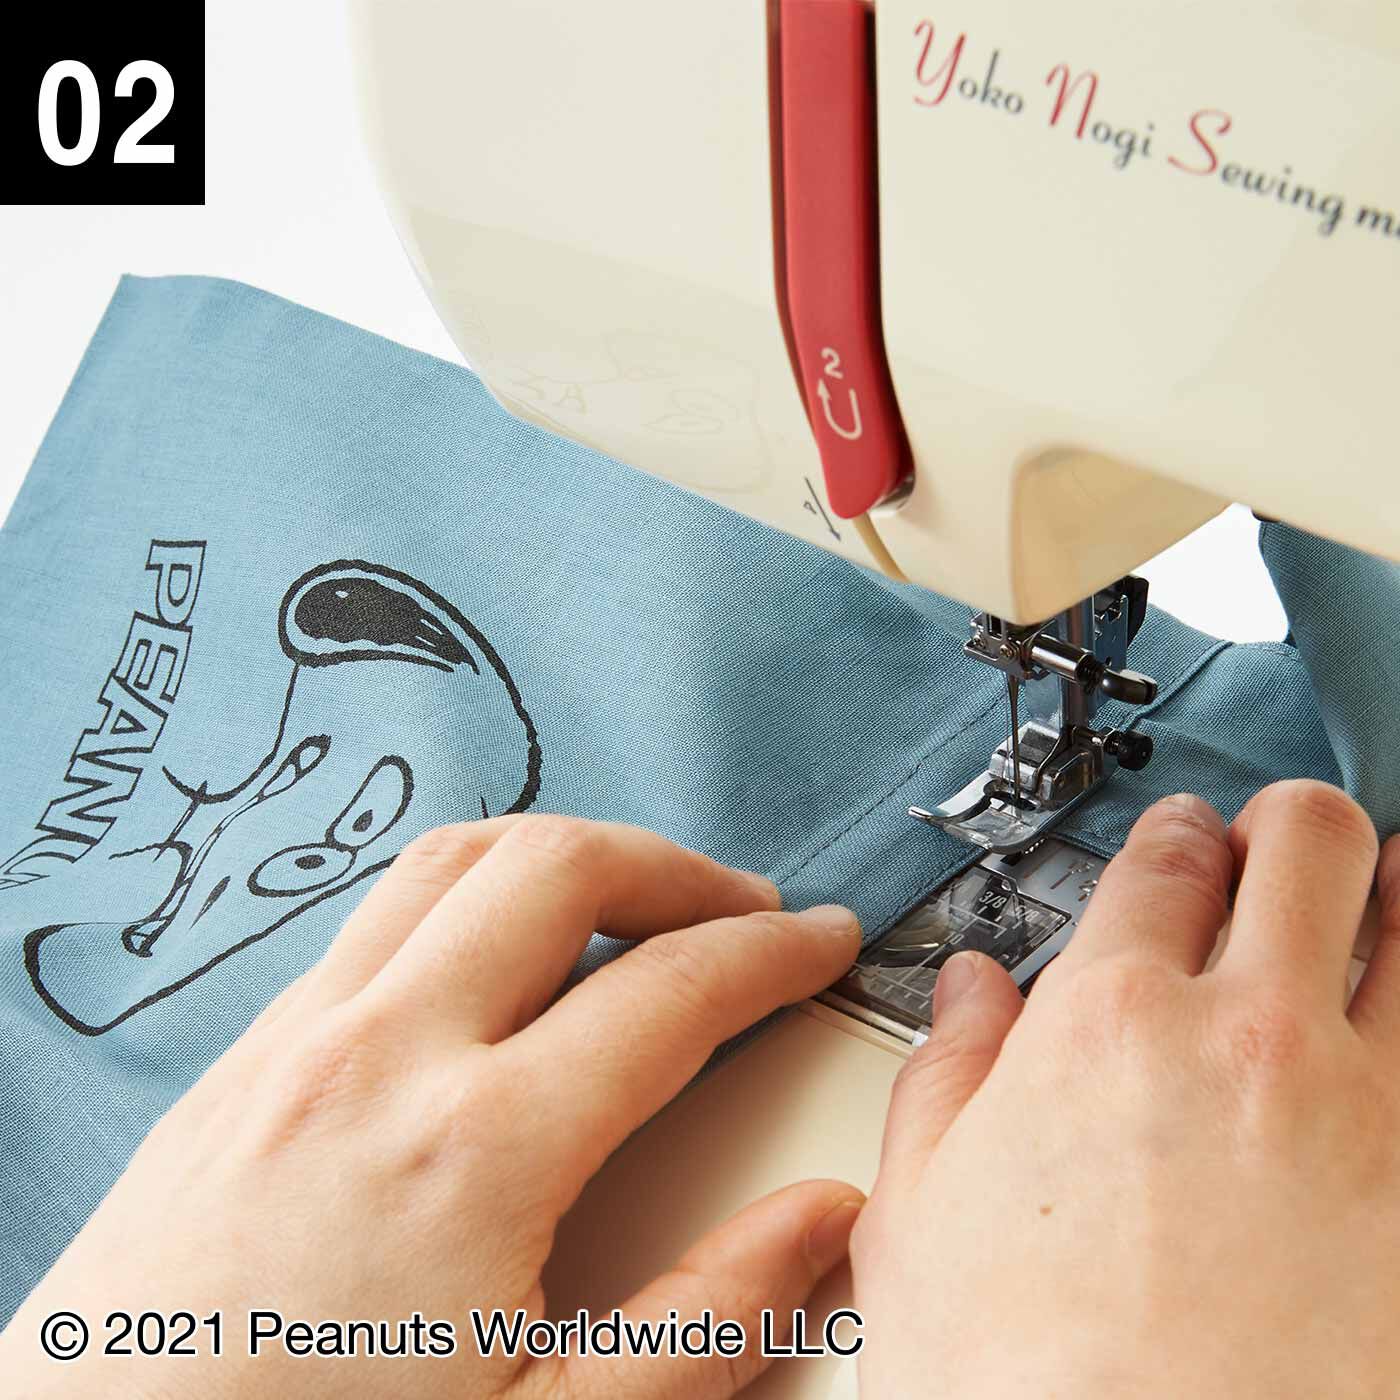 Couturier|スヌーピーと仲間たち 型紙いらずの 小さくたためるデイリーエコバッグの会|直線縫いだけのシンプルなデザインでミシンがけも簡単です。